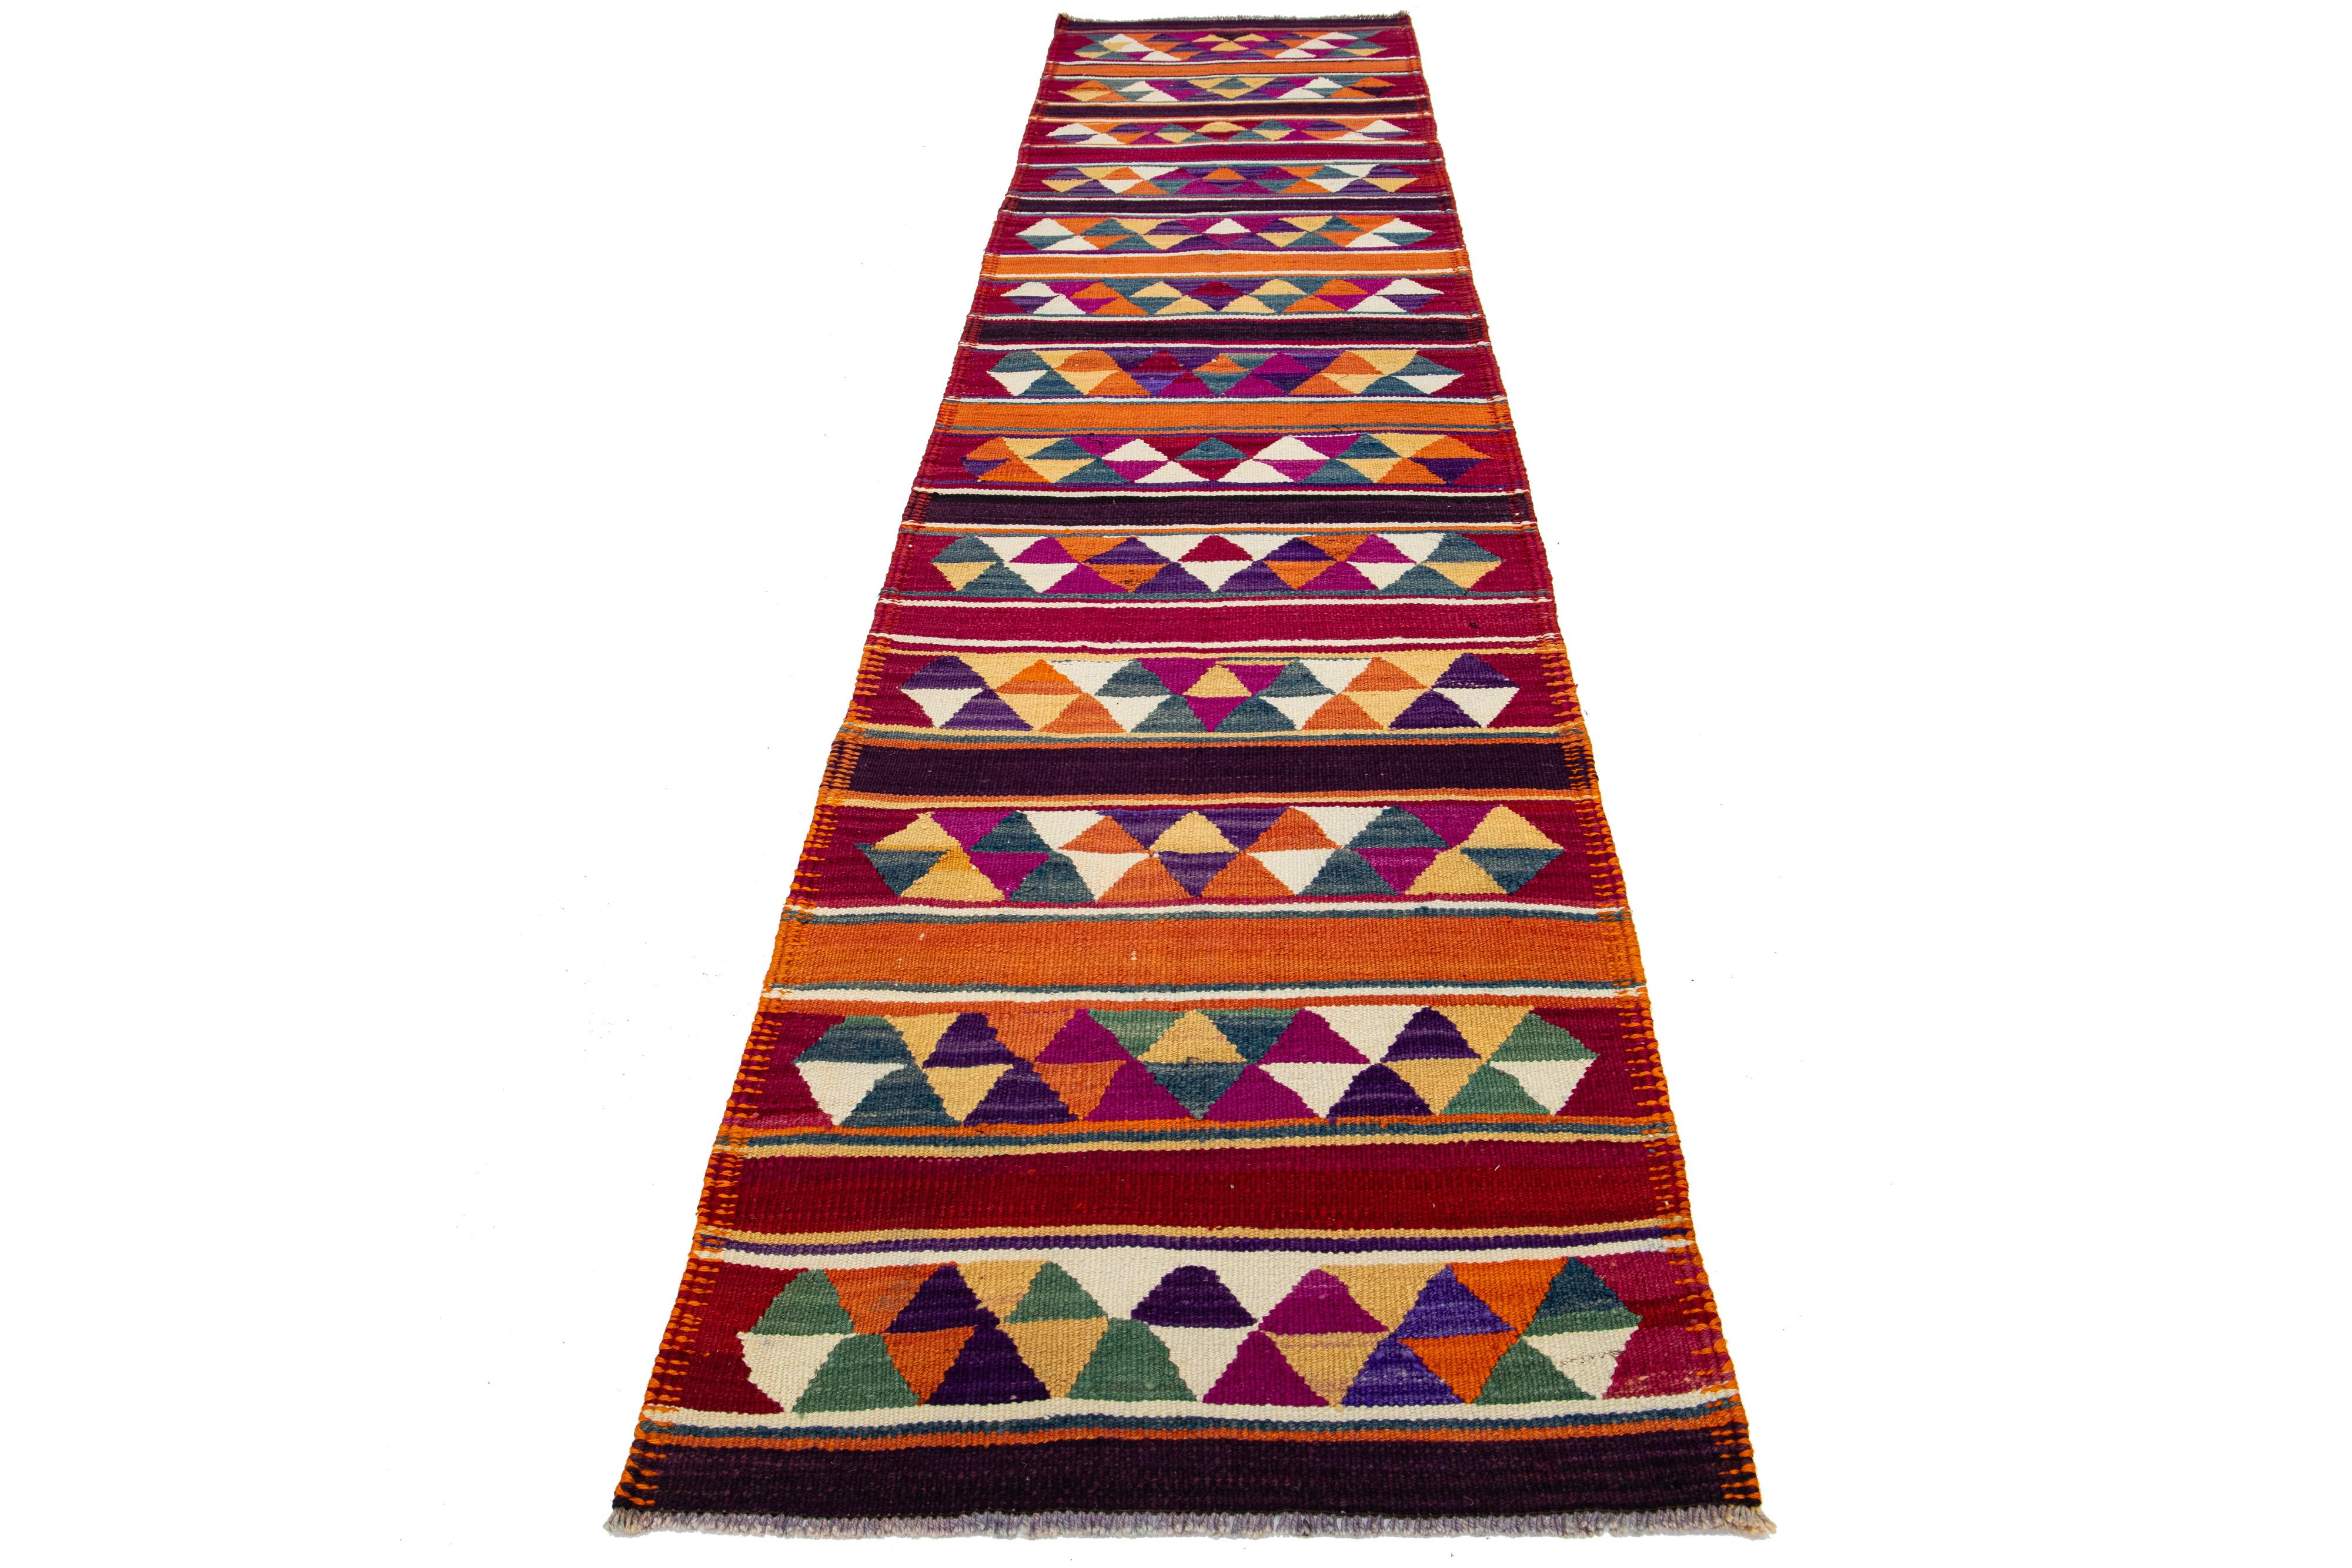 Ce magnifique tapis kilim en laine présente un superbe design géométrique sur toute sa surface et un champ multicolore vibrant. L'artisanat méticuleux et fait à la main garantit un ajout unique à n'importe quel espace.

Ce tapis mesure 2'9